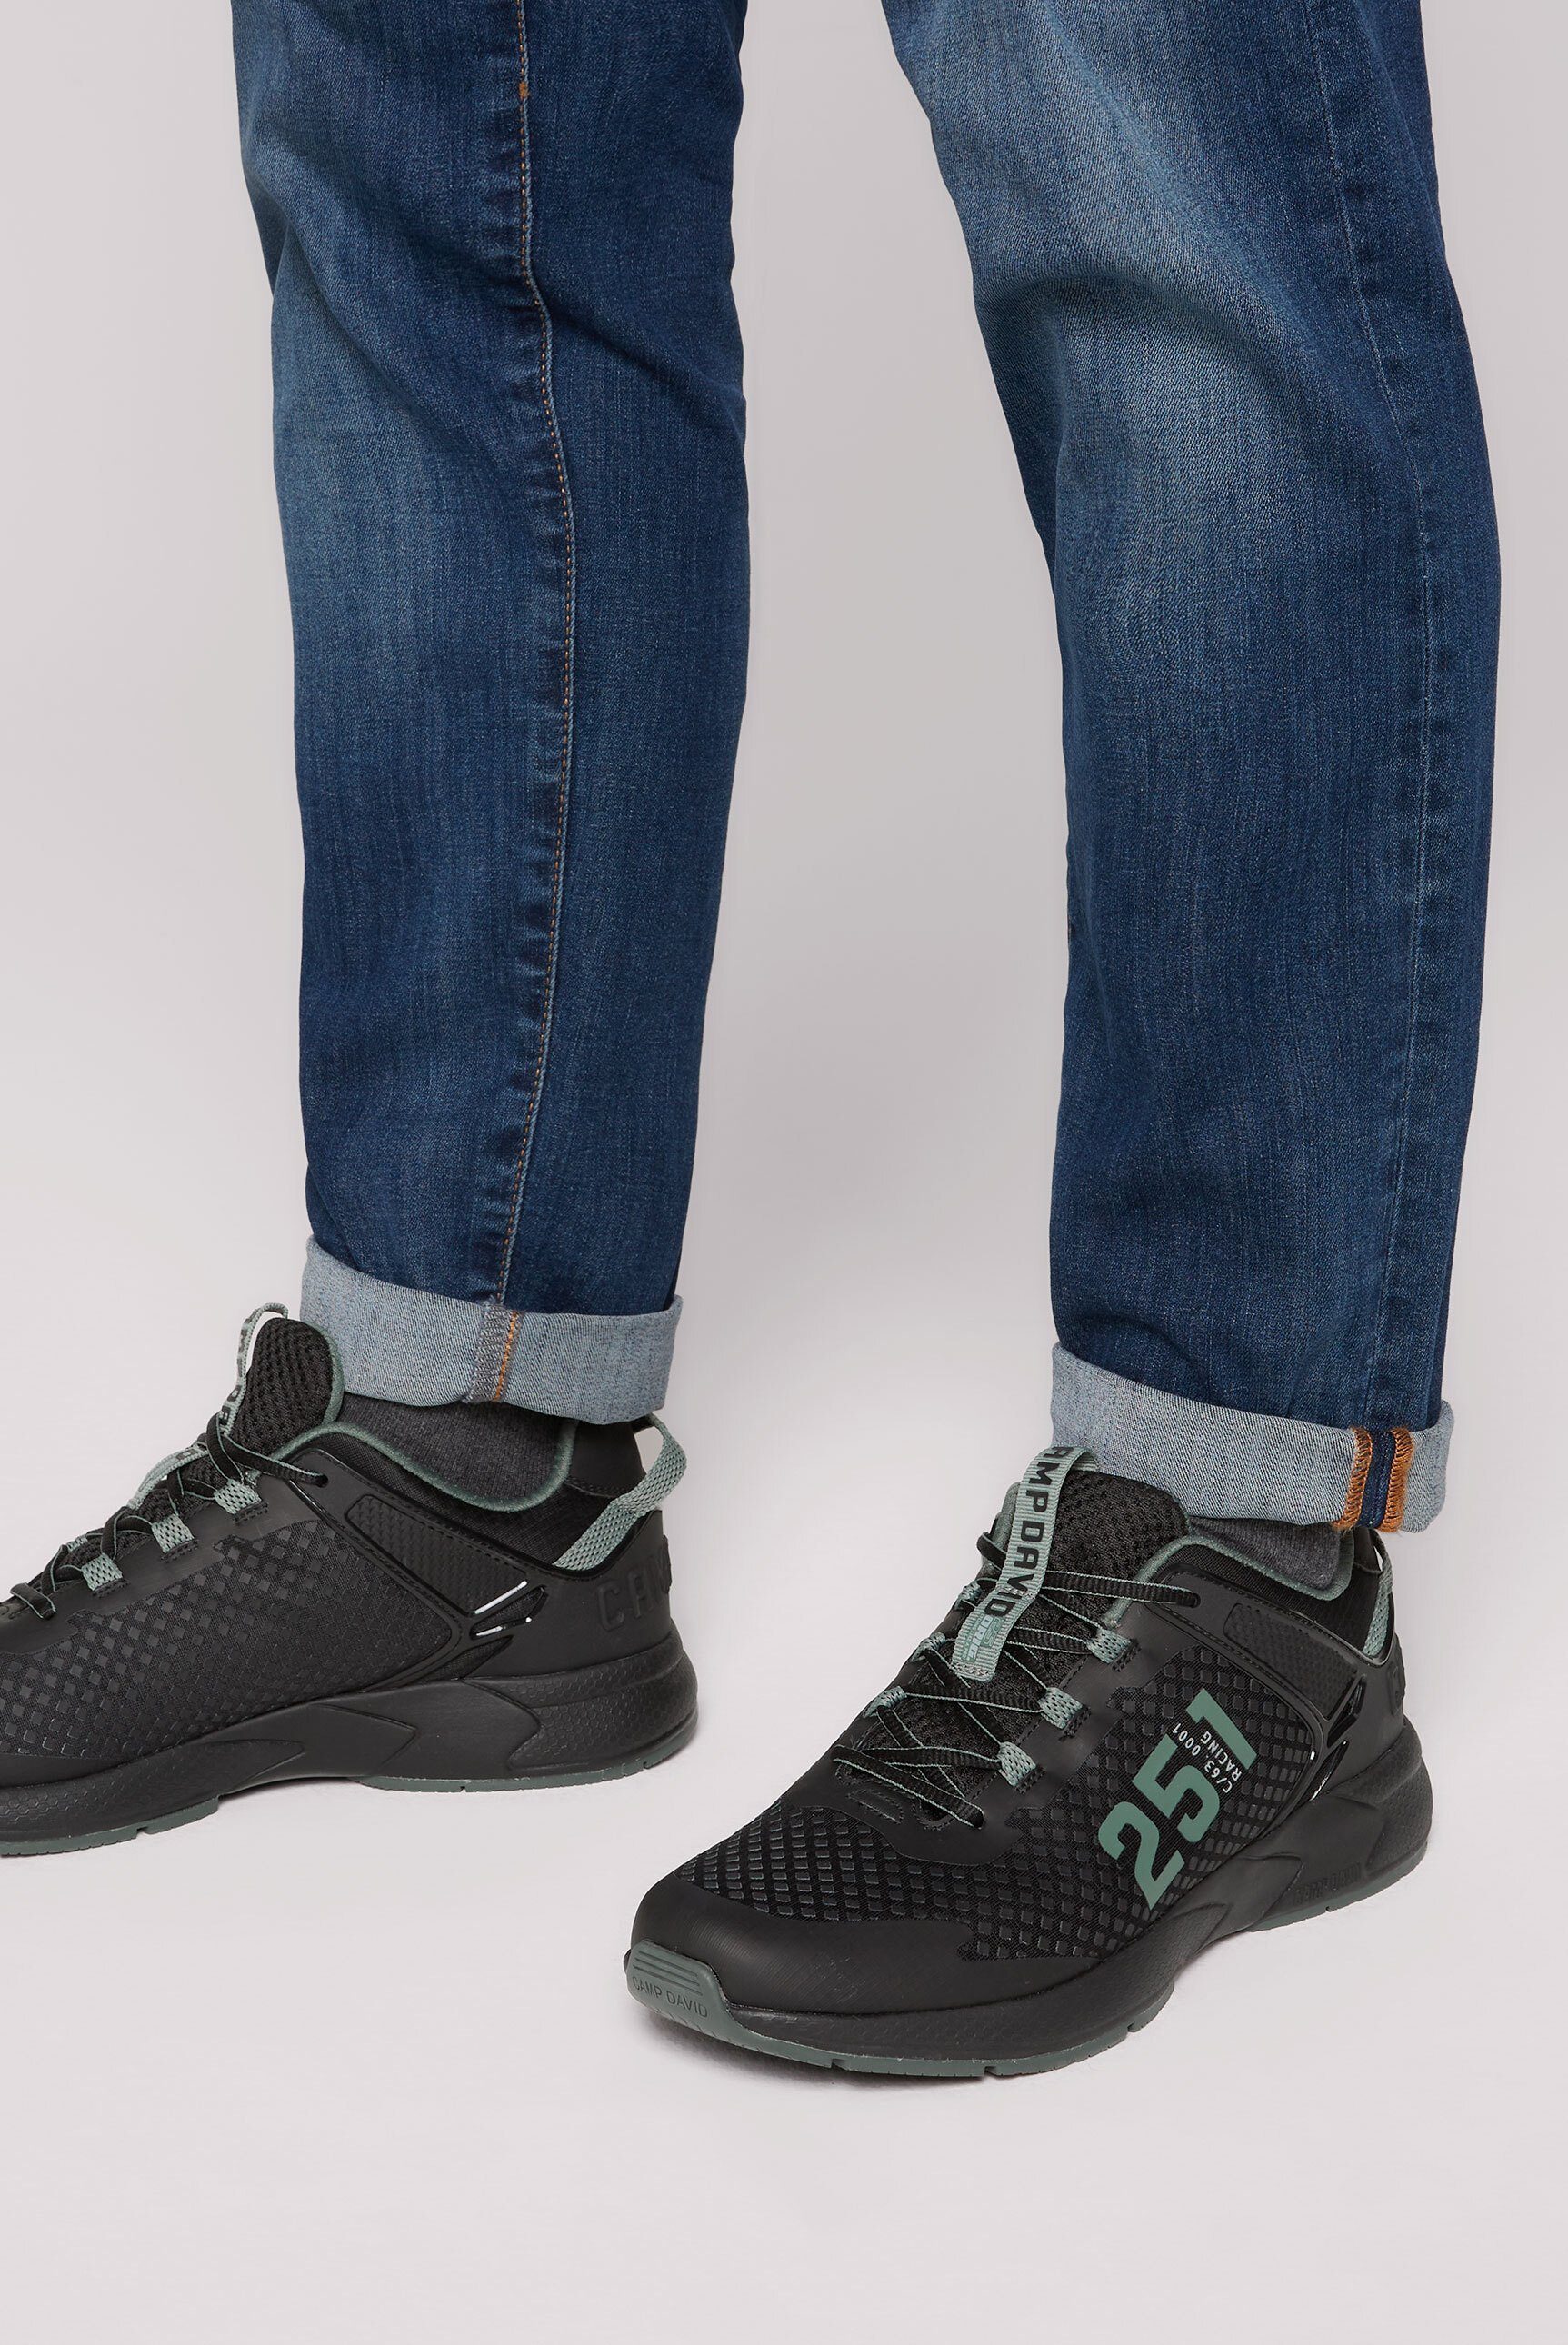 CAMP DAVID Sneaker mit Wechselfußbett, Materialmix mit Rubber-Design,  3D-Logo an der Ferse